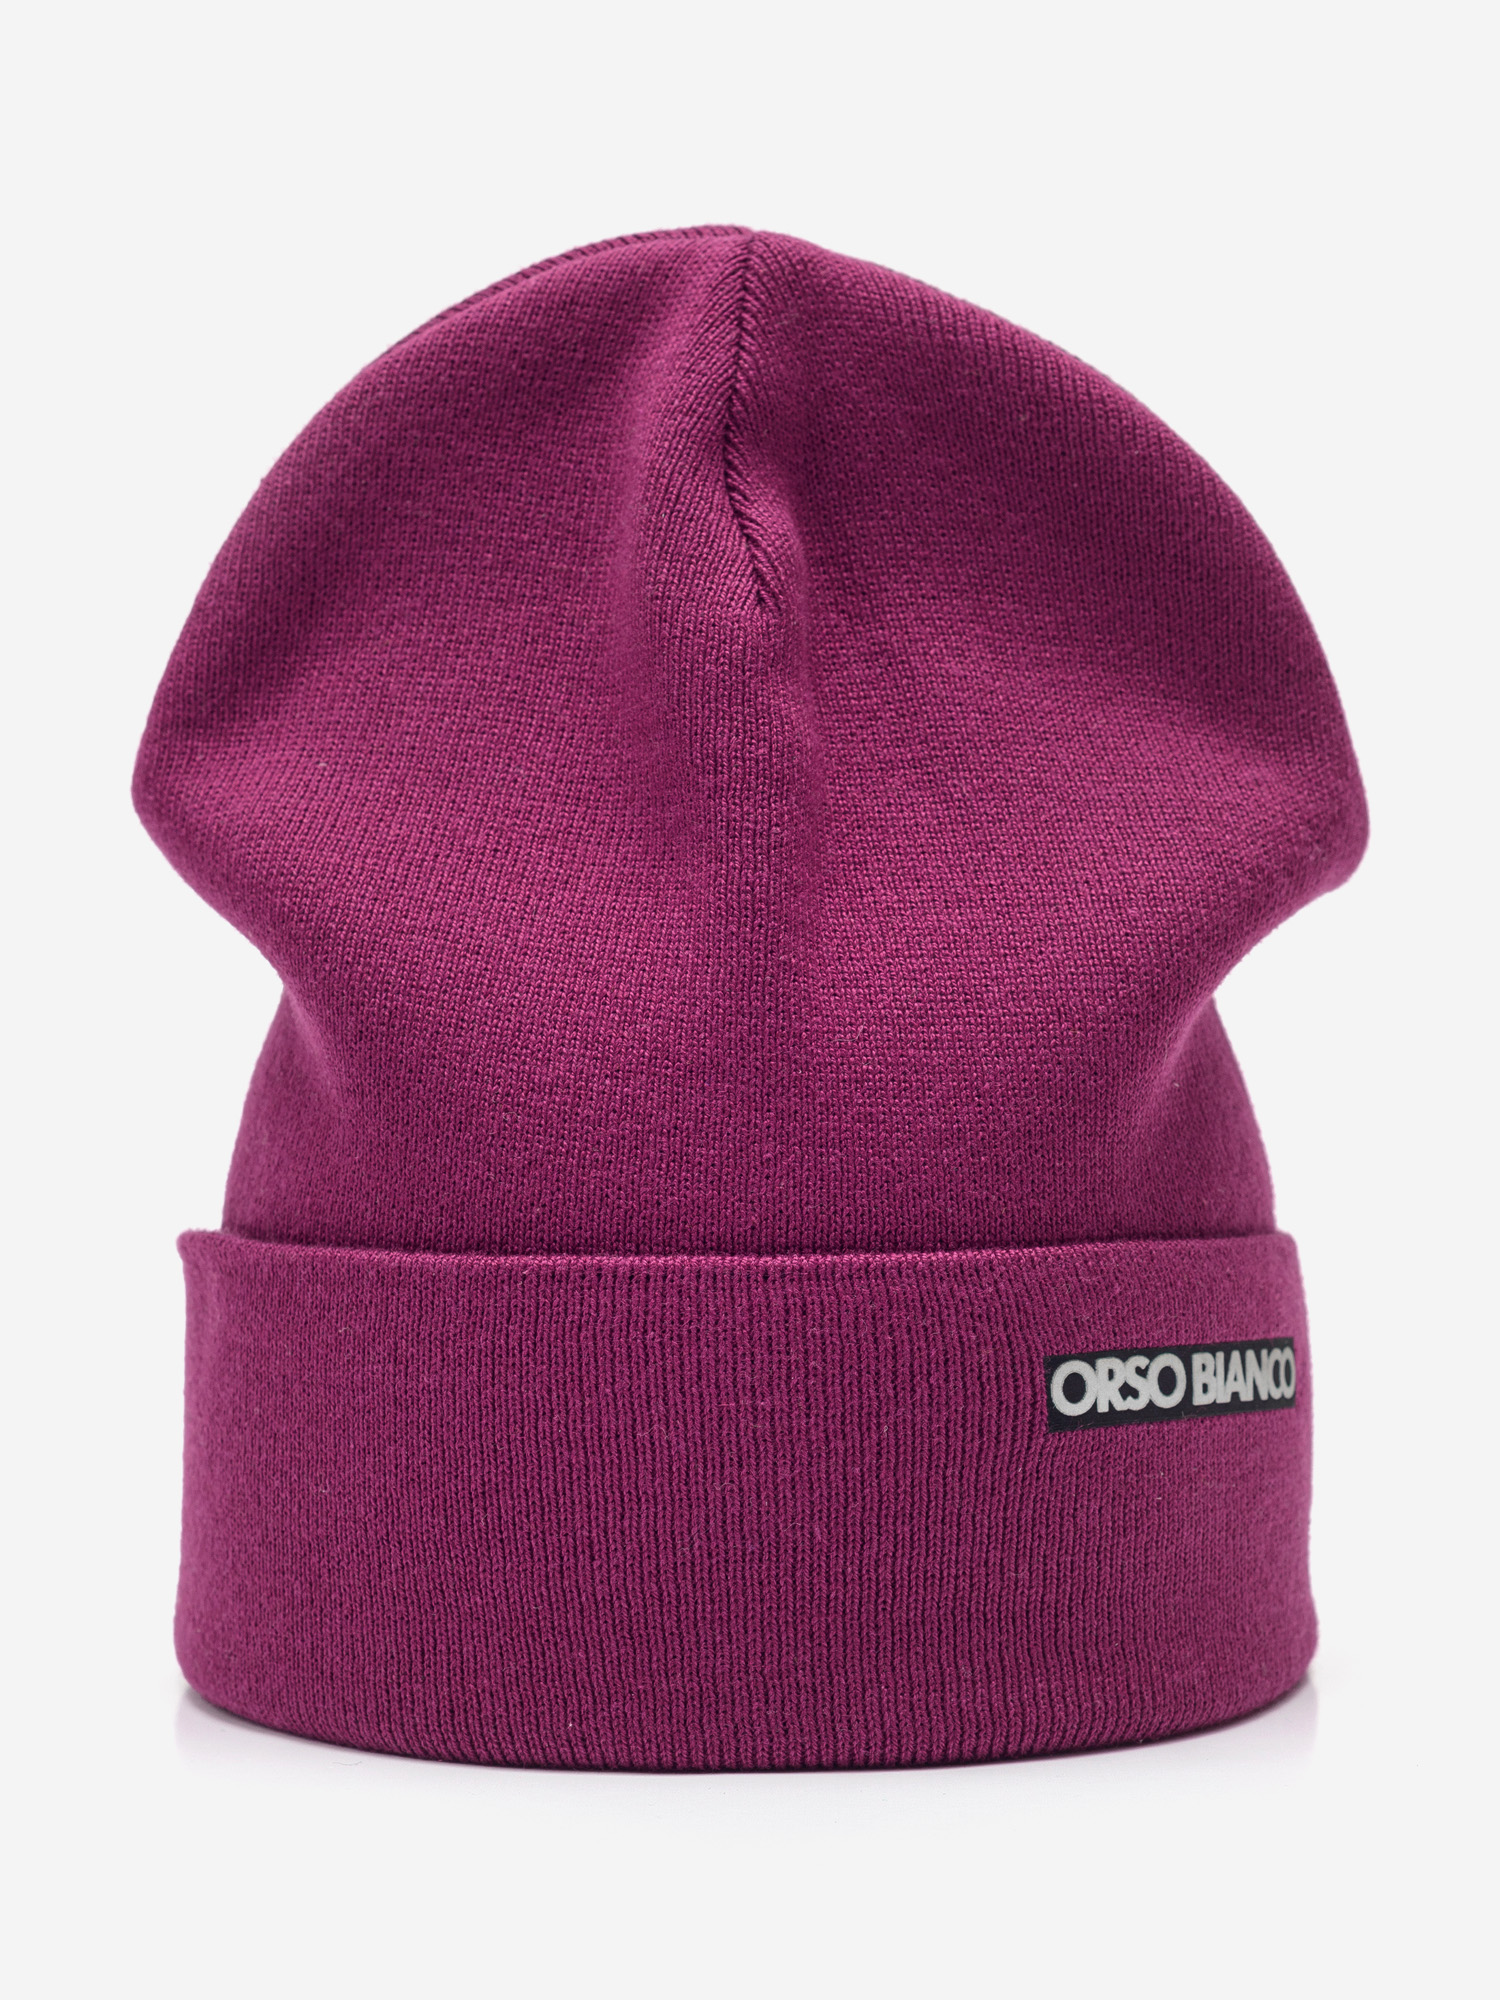 Шапка демисезонная для девочки ORSO BIANCO, Фиолетовый шапка для девочки orso bianco фиолетовый